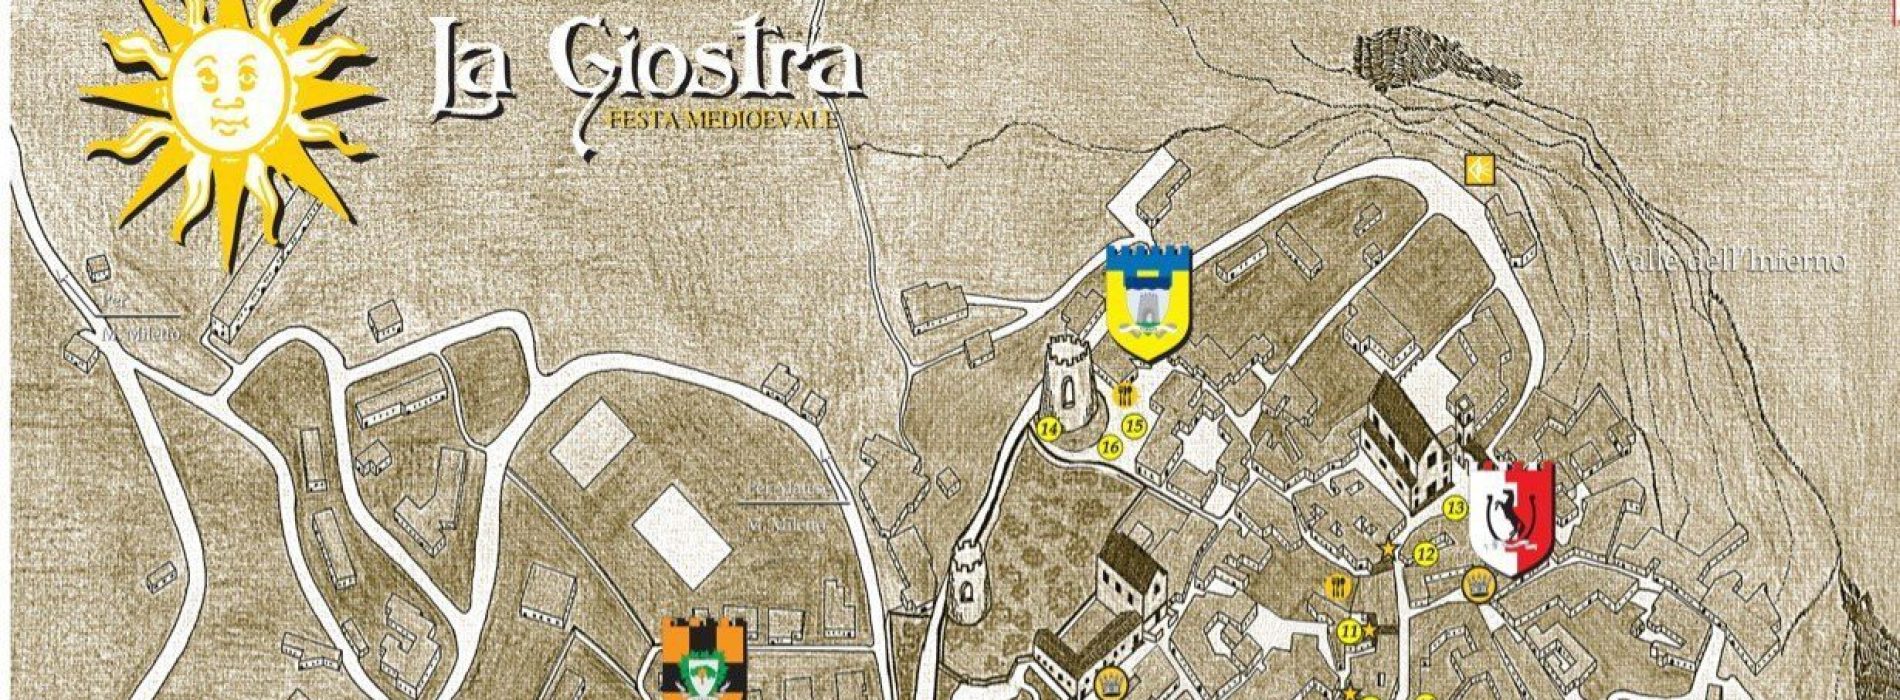 La Giostra a Castello del Matese, la festa medievale è qui